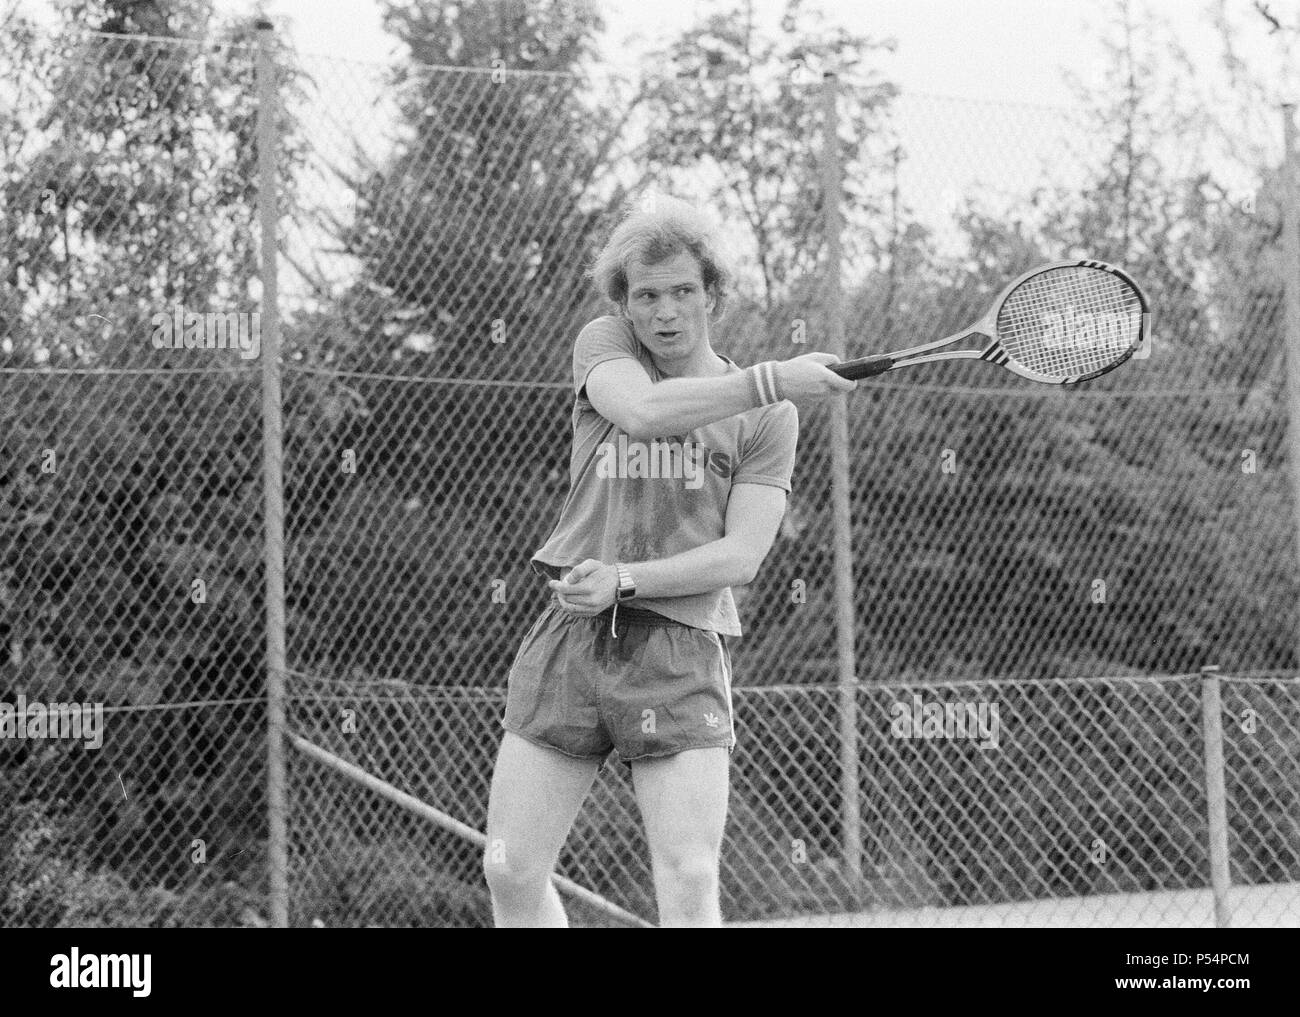 Uli Hoeneß Bayern München und West Deutschland, Tennis spielen in München, Deutschland, Mai 1975. Stockfoto